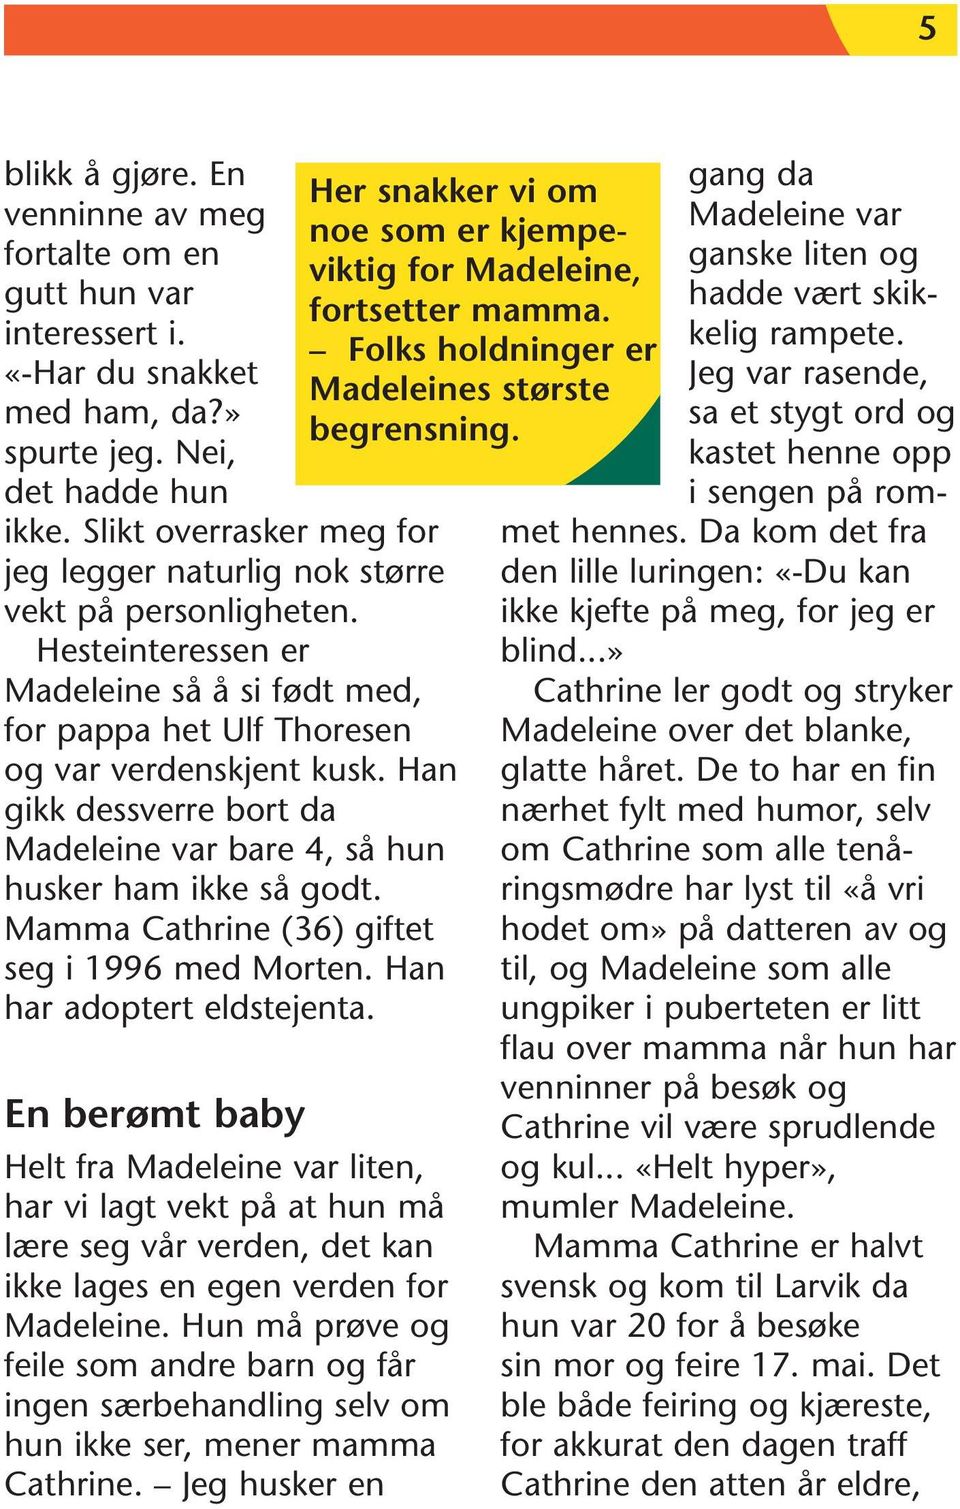 Han gikk dessverre bort da Madeleine var bare 4, så hun husker ham ikke så godt. Mamma Cathrine (36) giftet seg i 1996 med Morten. Han har adoptert eldstejenta.